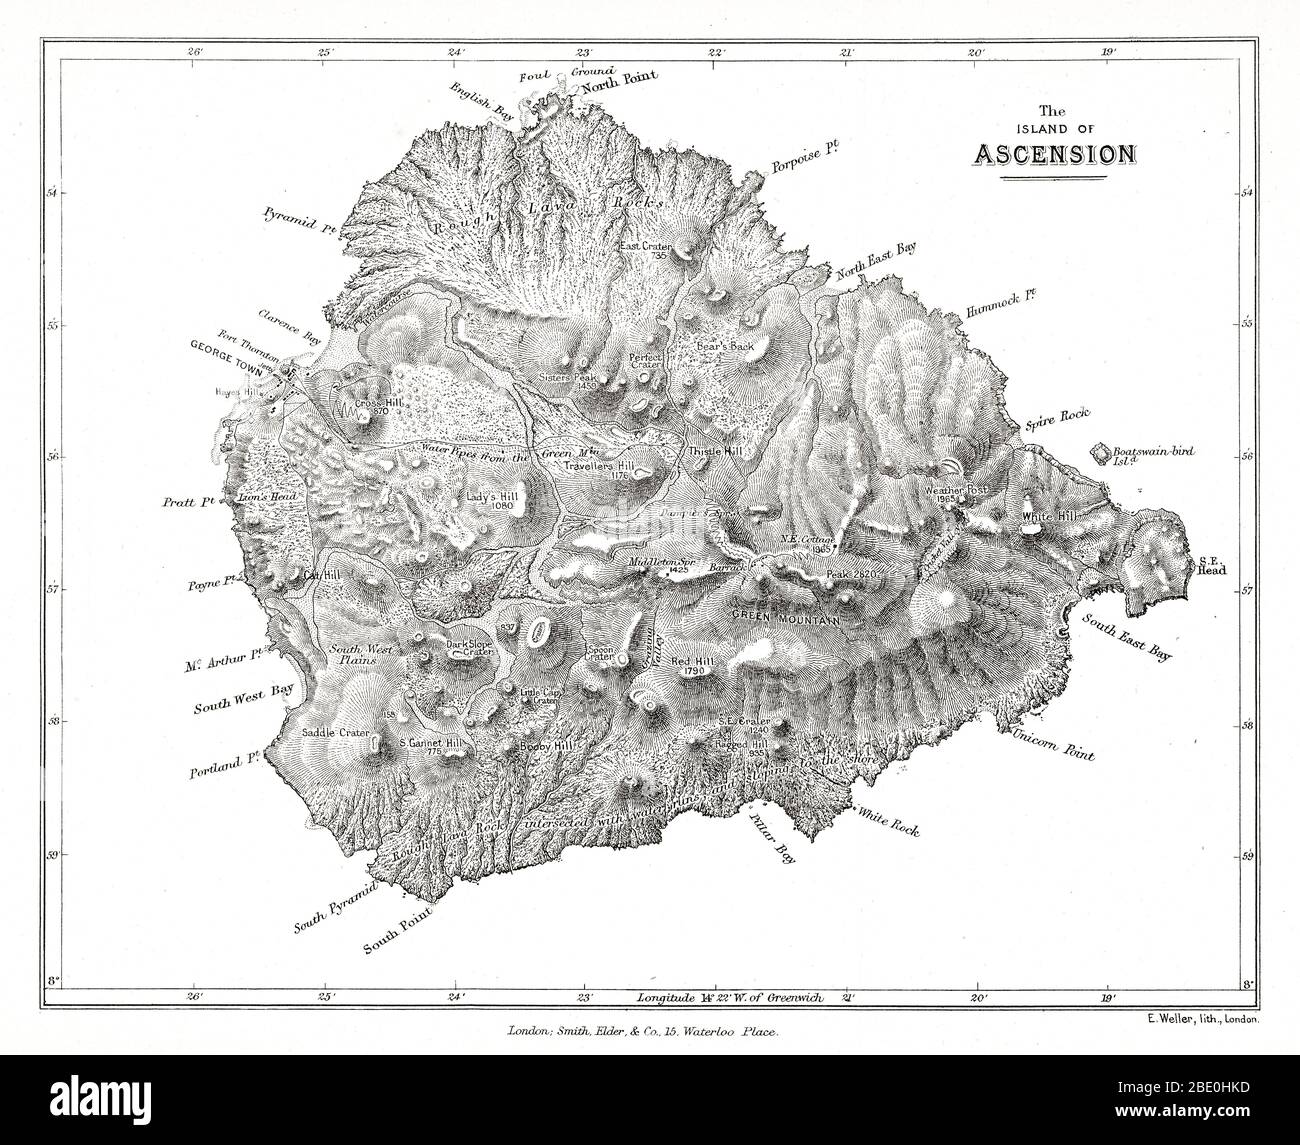 Karte der Insel Ascension von Charles Darwin's Geologische Beobachtungen auf den Vulkaninseln und Teilen Südamerikas, die während der Reise von H.M.S. besucht wurden „Beagle“. 2d-Bearbeitung. London: Smith Elder and Co., 1876. Ascension Island ist eine isolierte Vulkaninsel im Äquatorialwasser des Südatlantiks, etwa 1,600 Kilometer (1,000 Meilen) von der Küste Afrikas und 2,250 Kilometer (1,400 Meilen) von der Küste Südamerikas entfernt, die ungefähr auf halbem Weg zwischen dem Horn Südamerikas und Afrikas liegt. Stockfoto